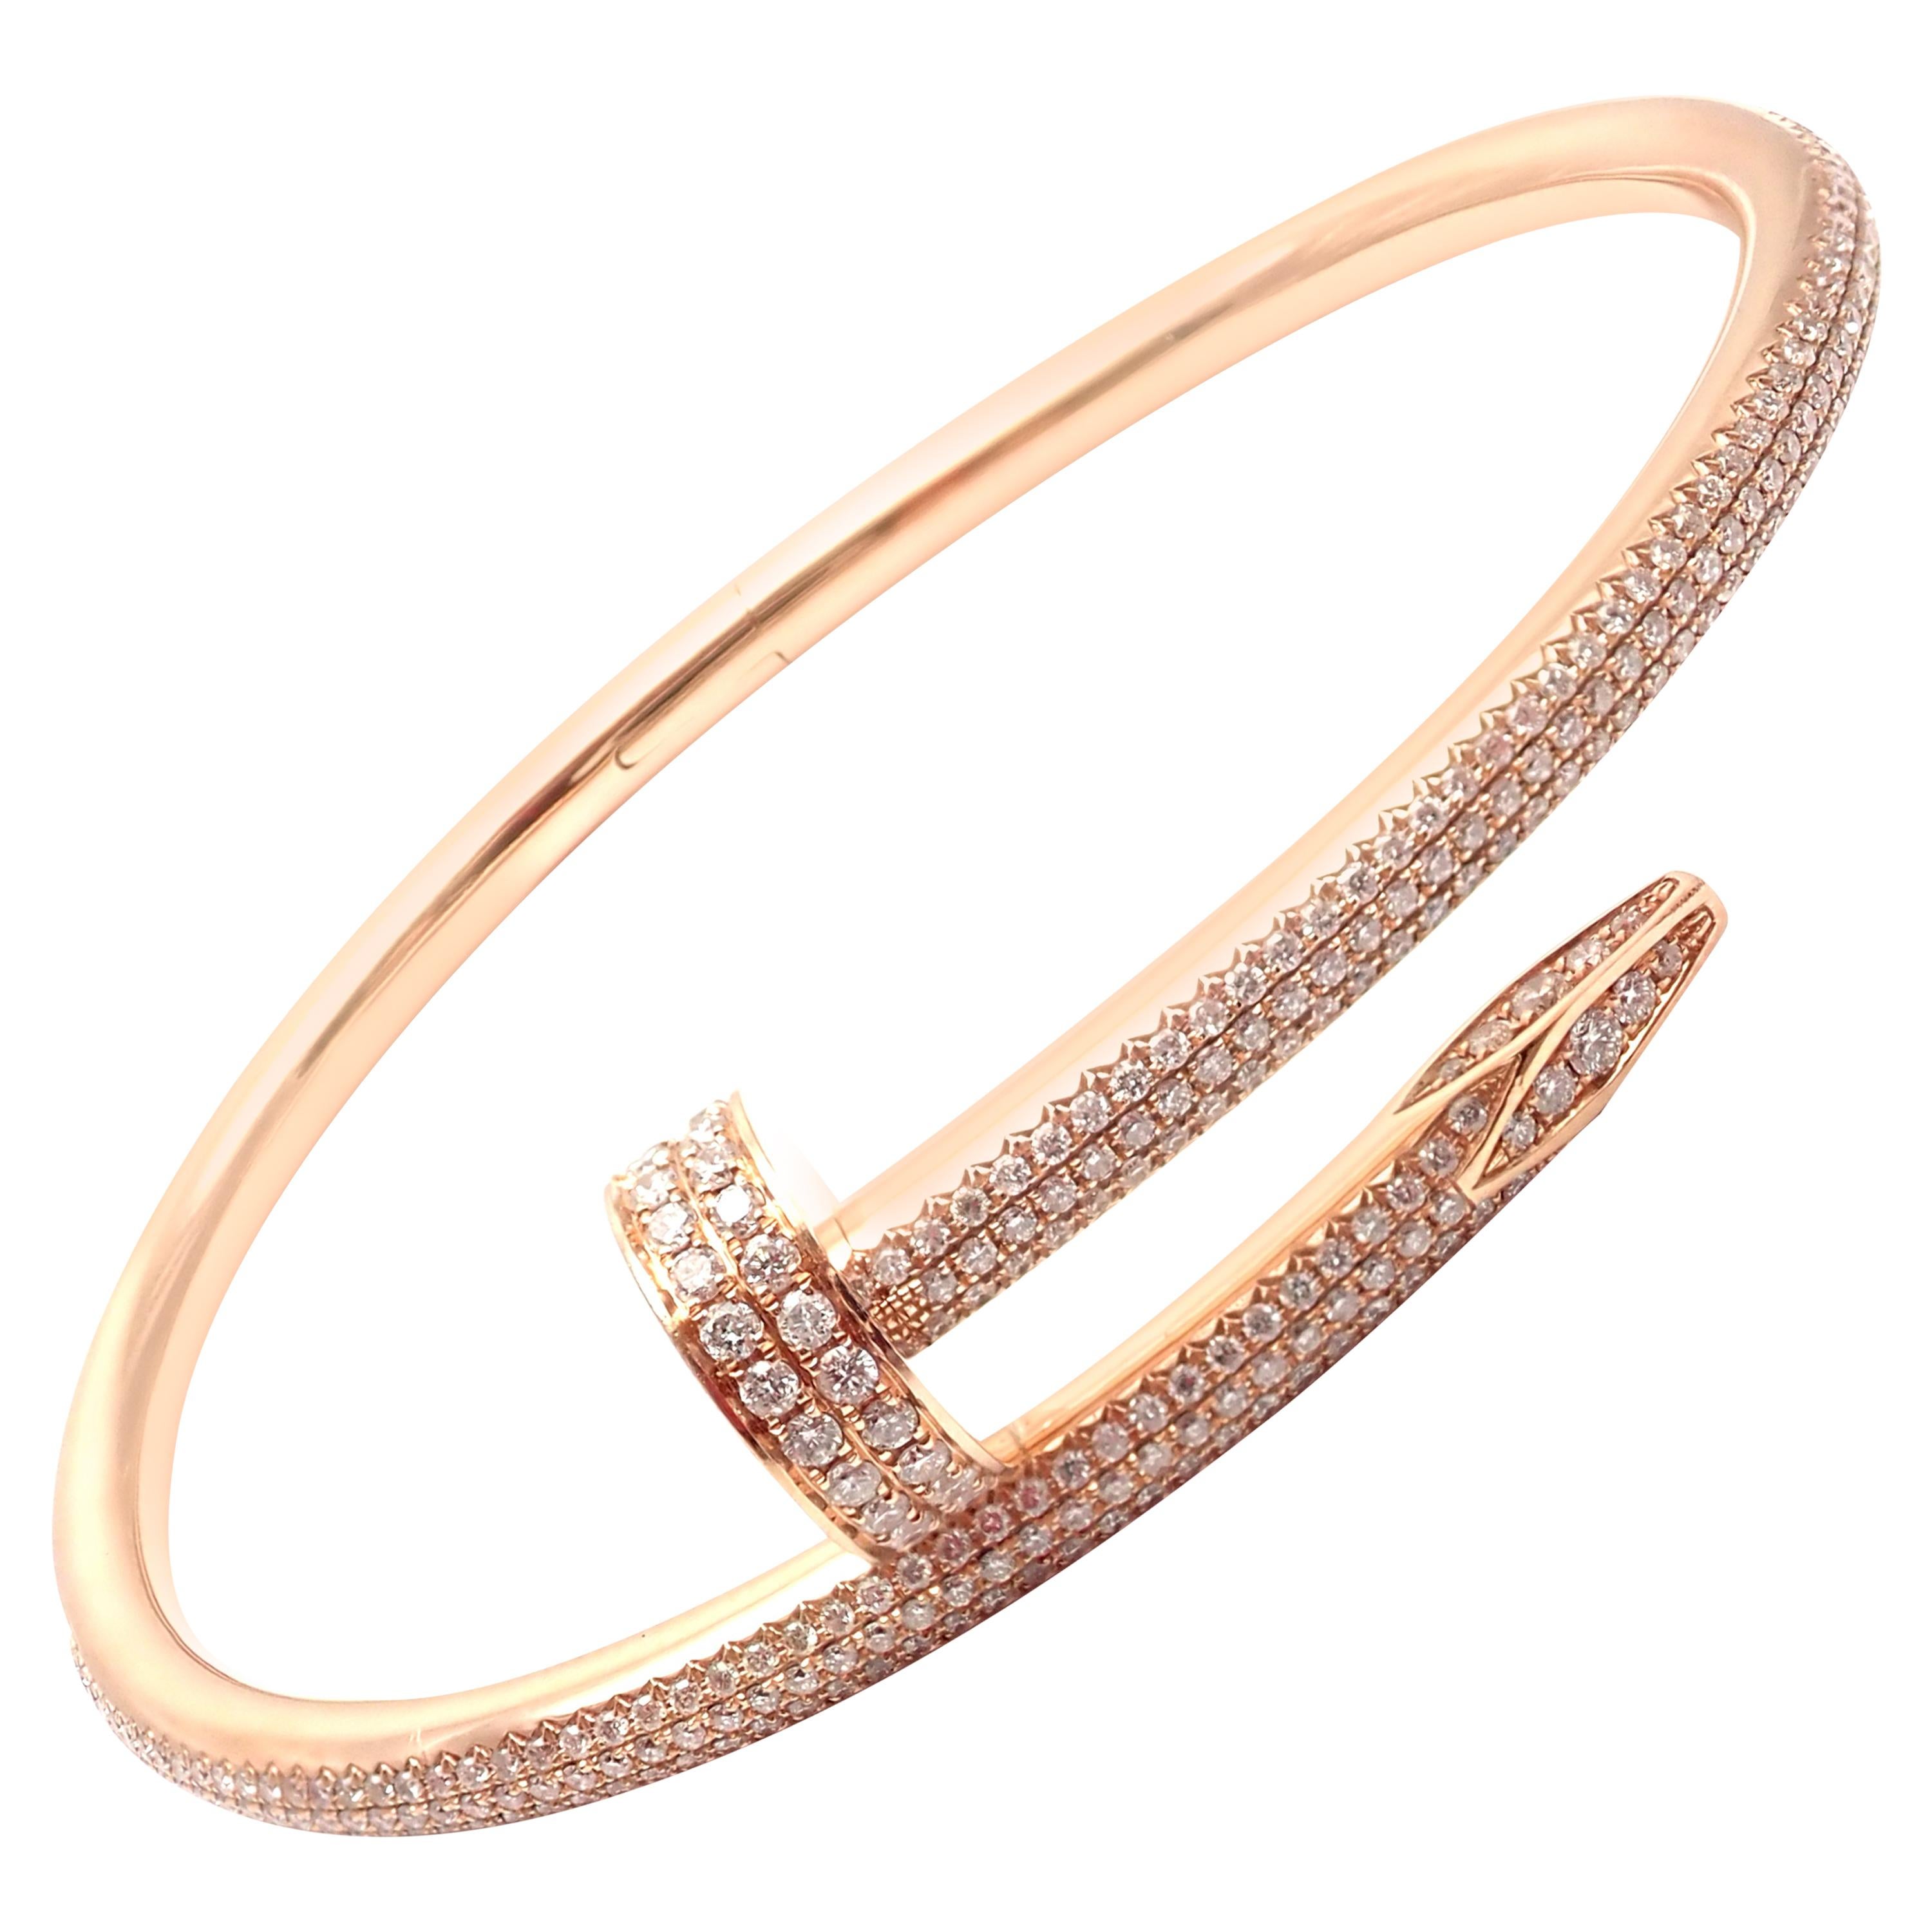 Cartier Juste Un Clou Nagel 2::26 Karat Diamant Rose Gold Armreif Armband